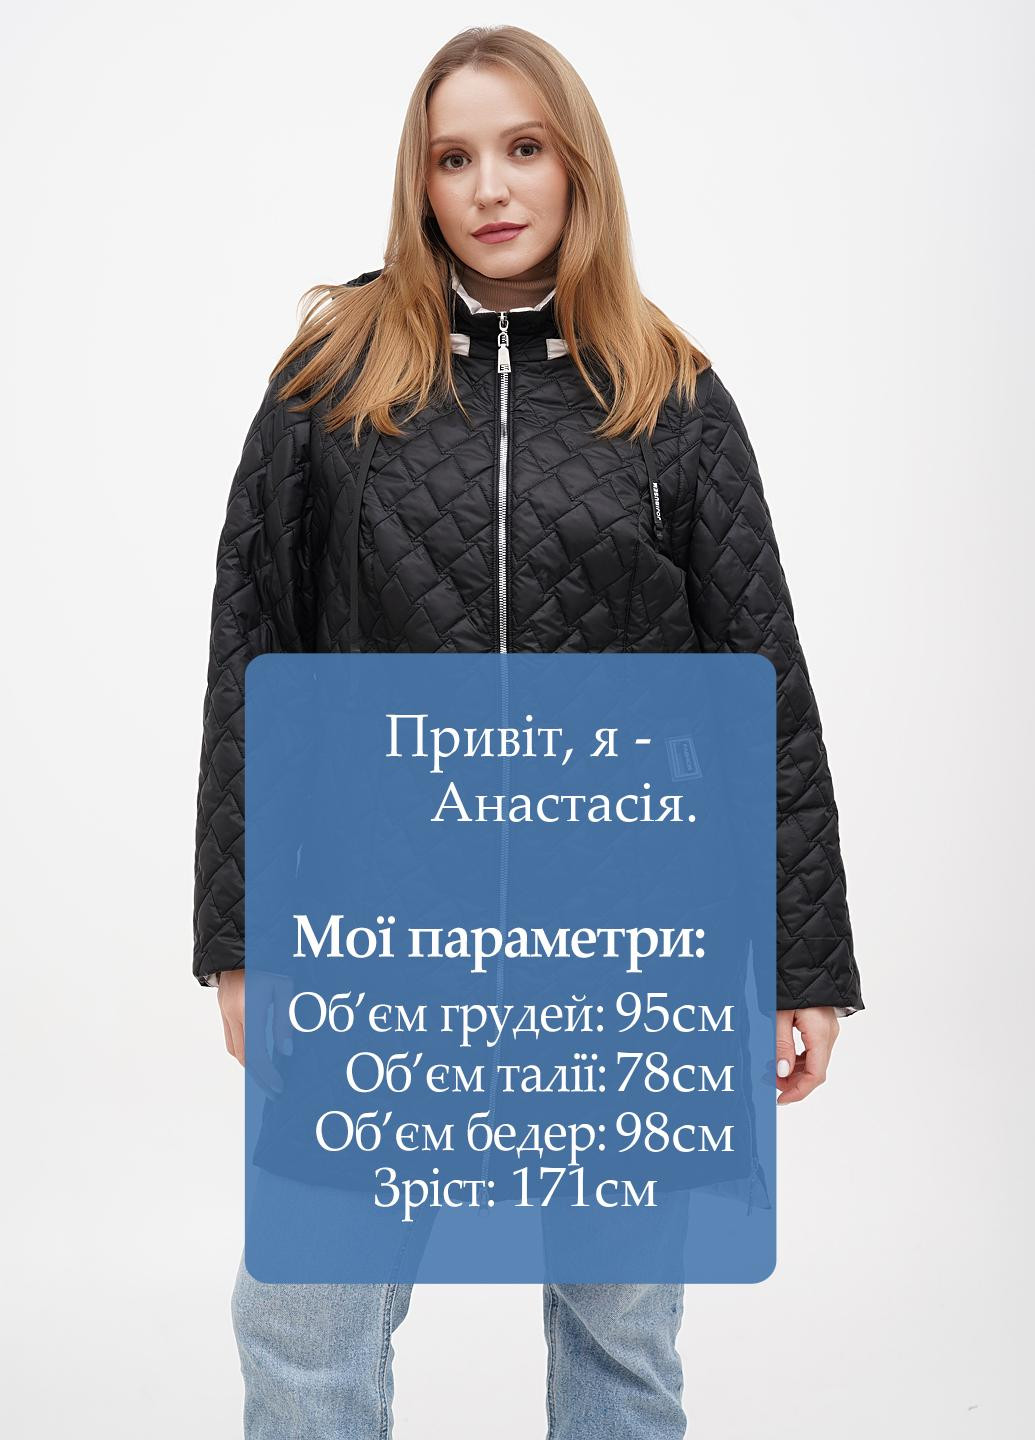 Черная демисезонная куртка куртка-трансформер Eva Classic